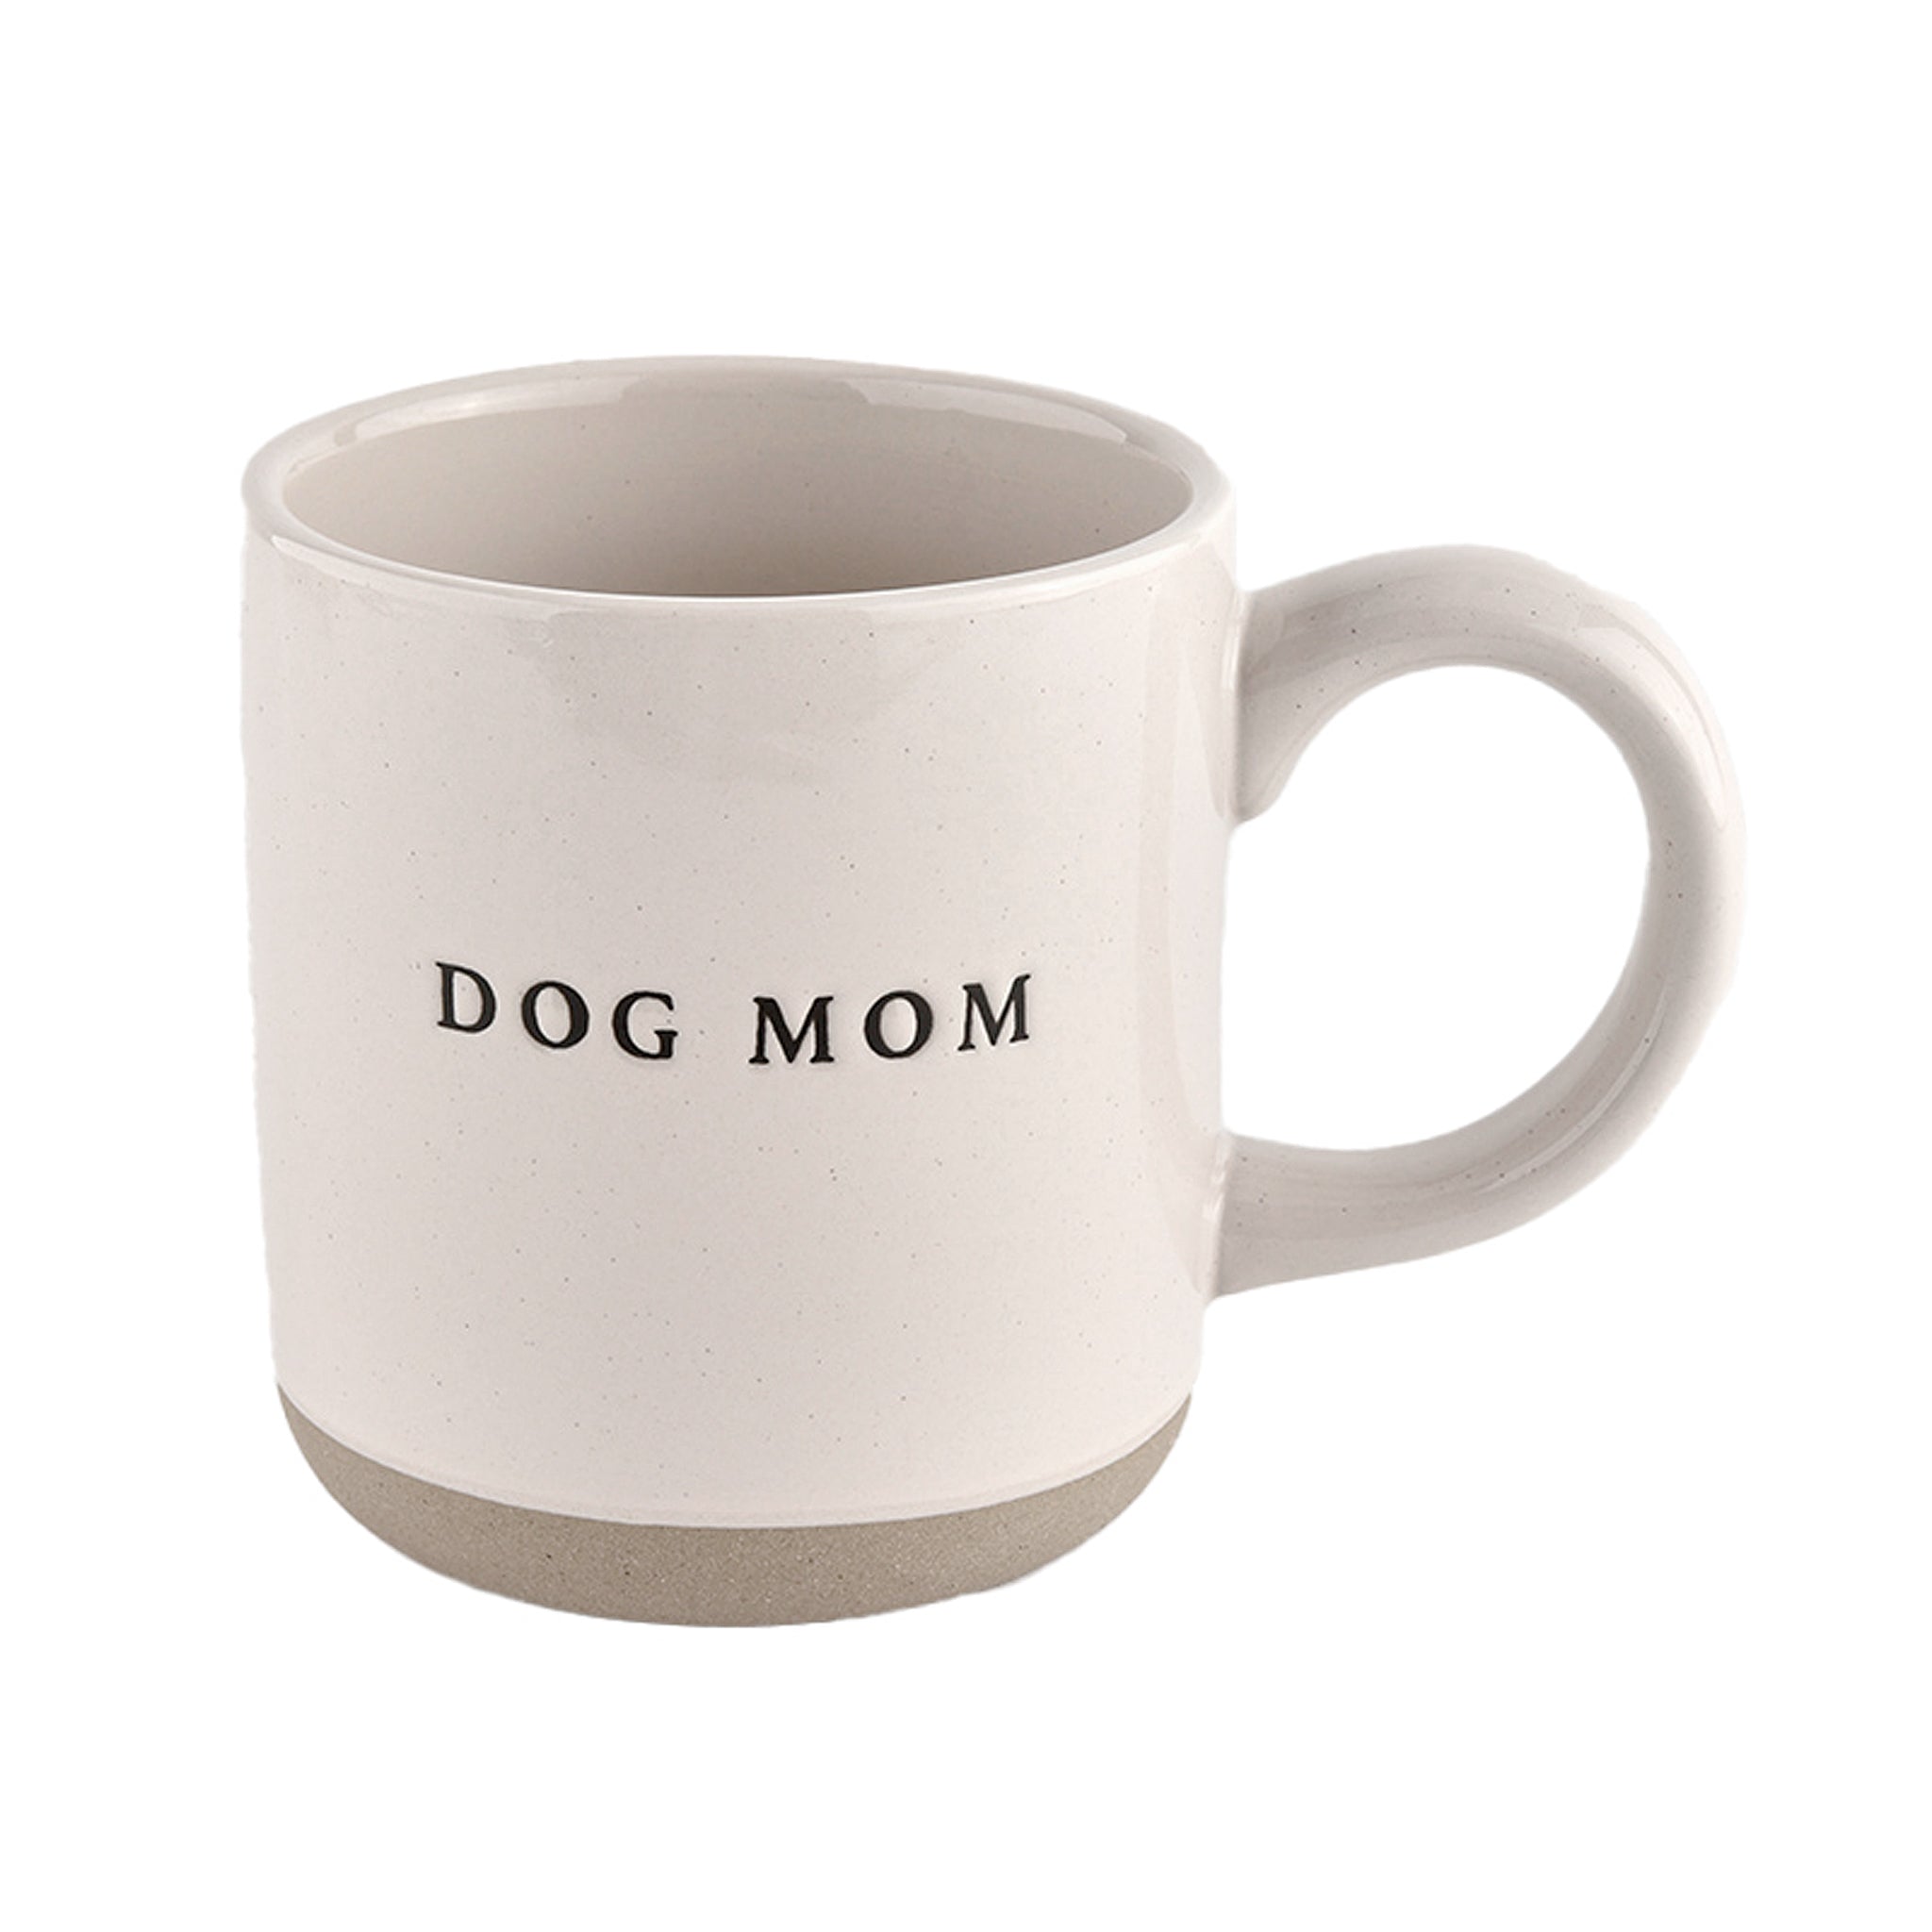 Dog Mom 14oz Coffee Mug in Speckled Cream Stoneware